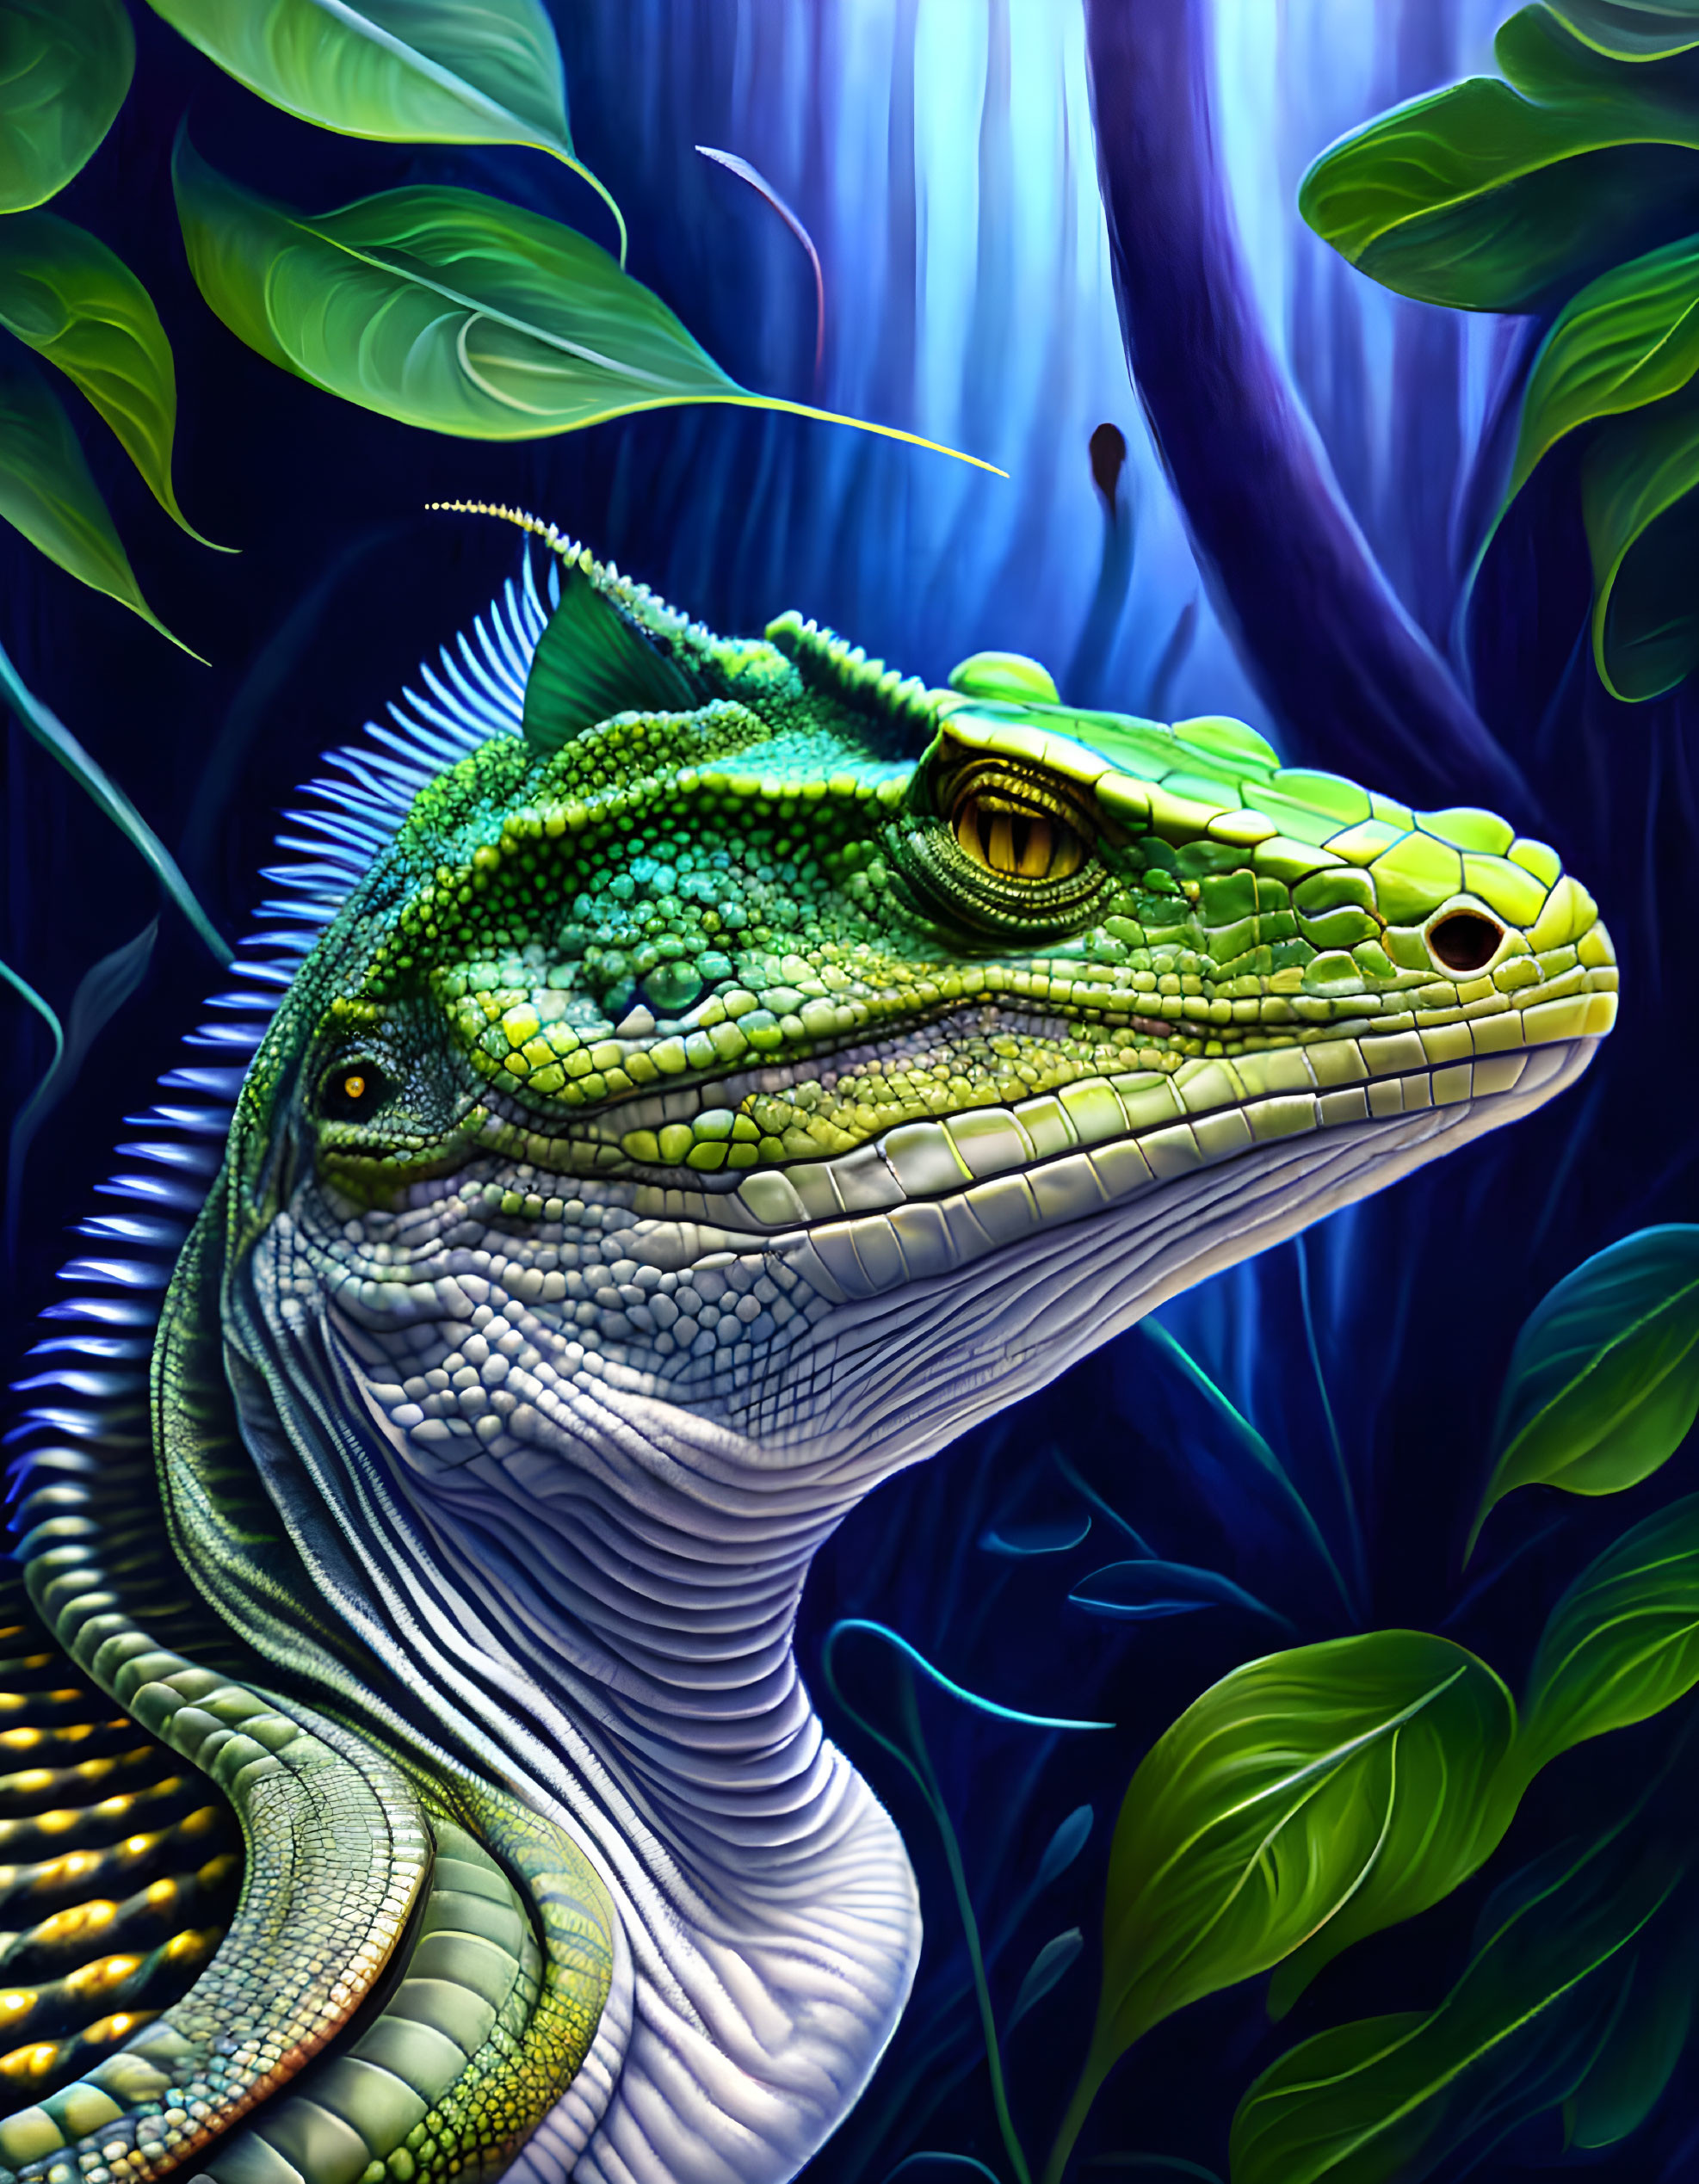 Colorful Green Iguana Illustration Among Tropical Foliage